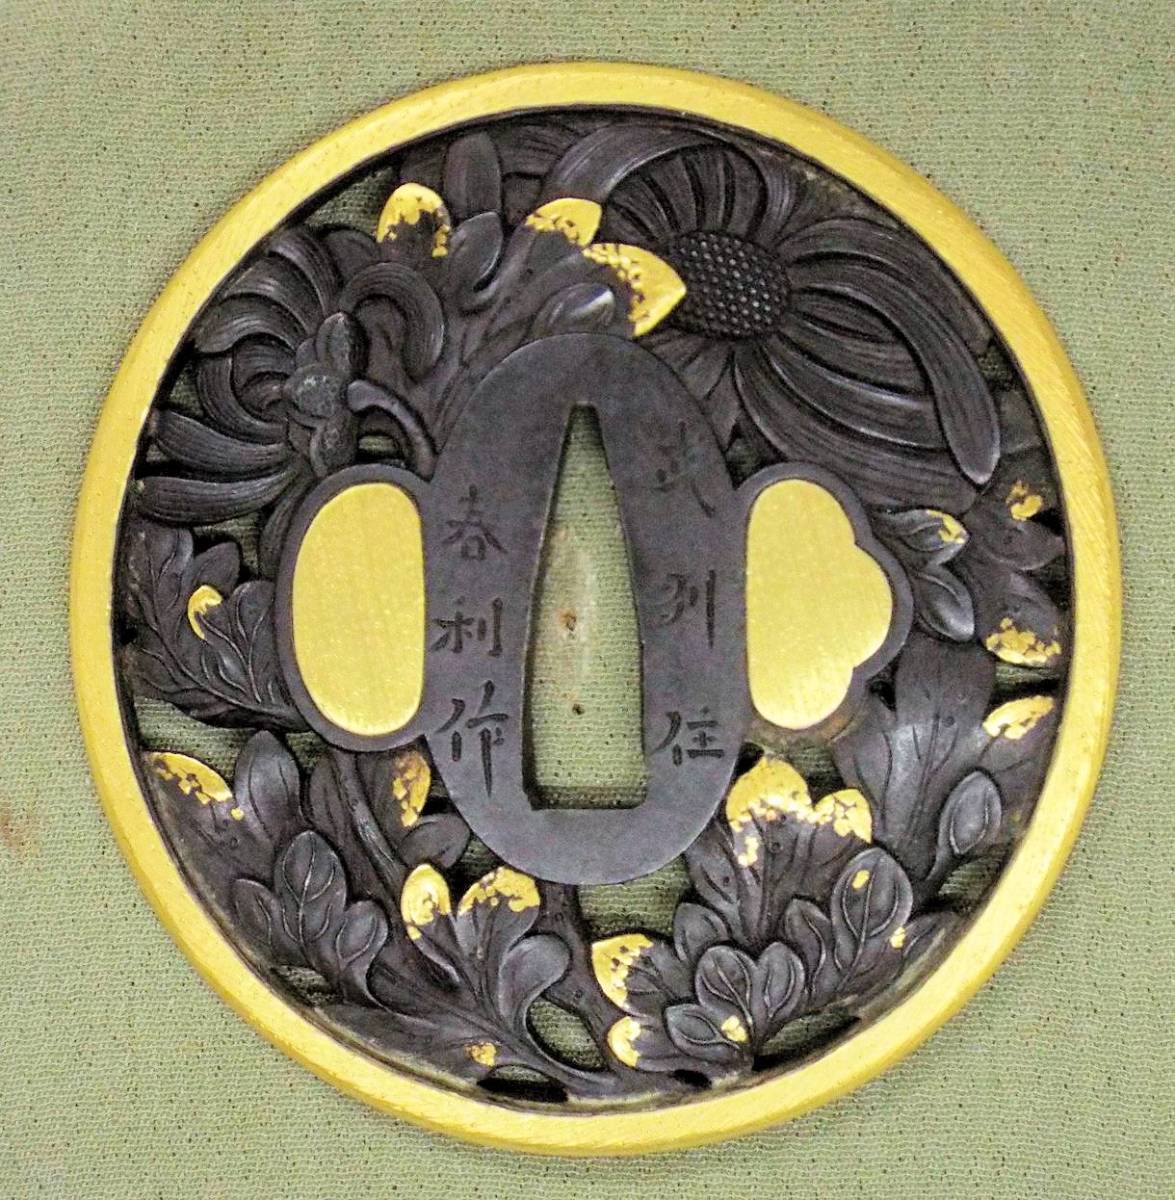 鉄鍔 鐔 (菊花図) 鋤彫り 江戸時代 - 武具